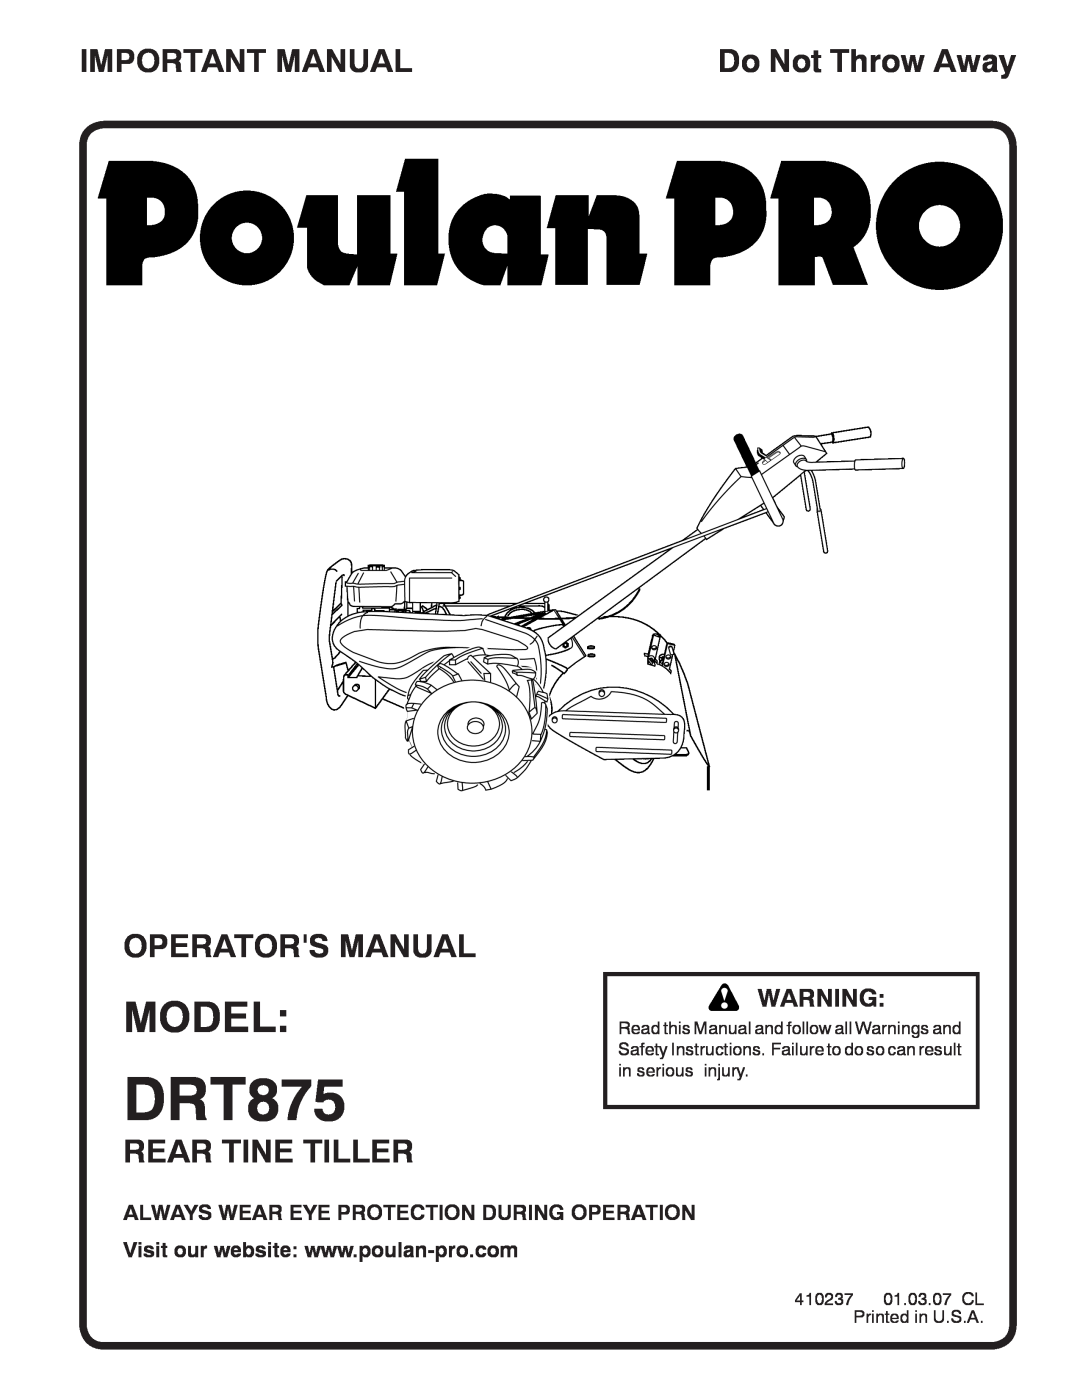 Poulan DRT875 manual Model, Important Manual, Operators Manual, Rear Tine Tiller, Do Not Throw Away 